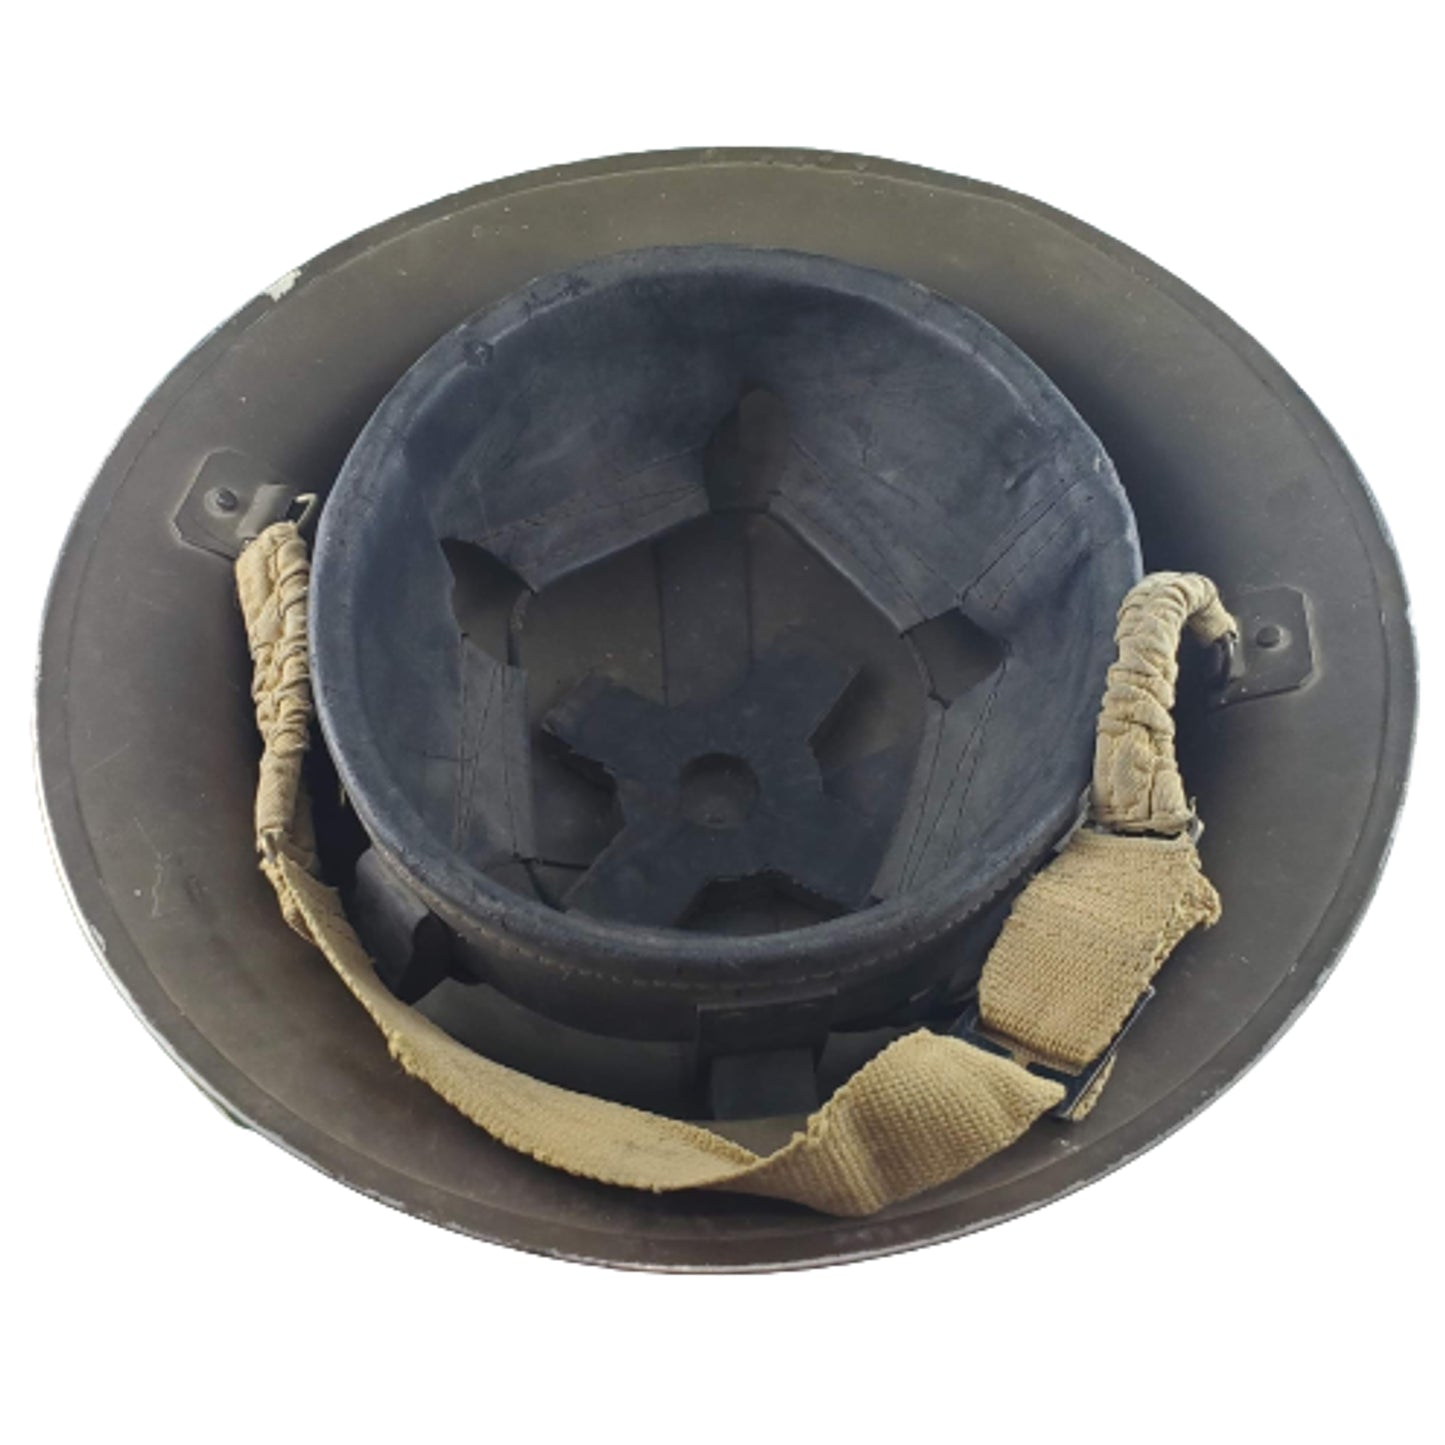 WW2 British Homefront Helmet 1941